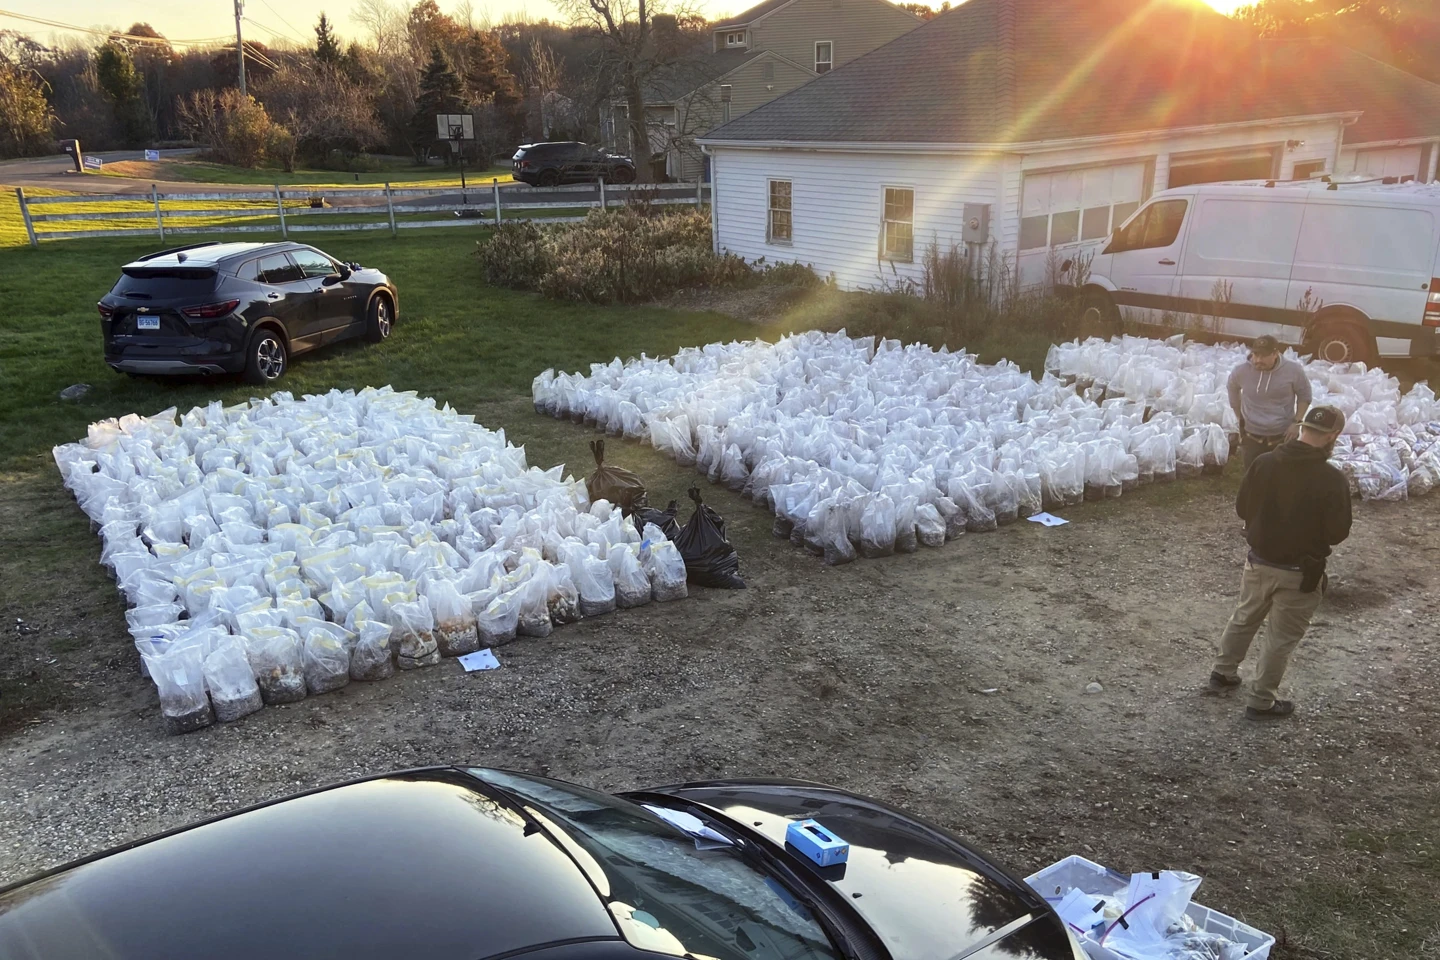 Setki worków z psylocybinowymi grzybami rozłożonych na podwórku przed domem.